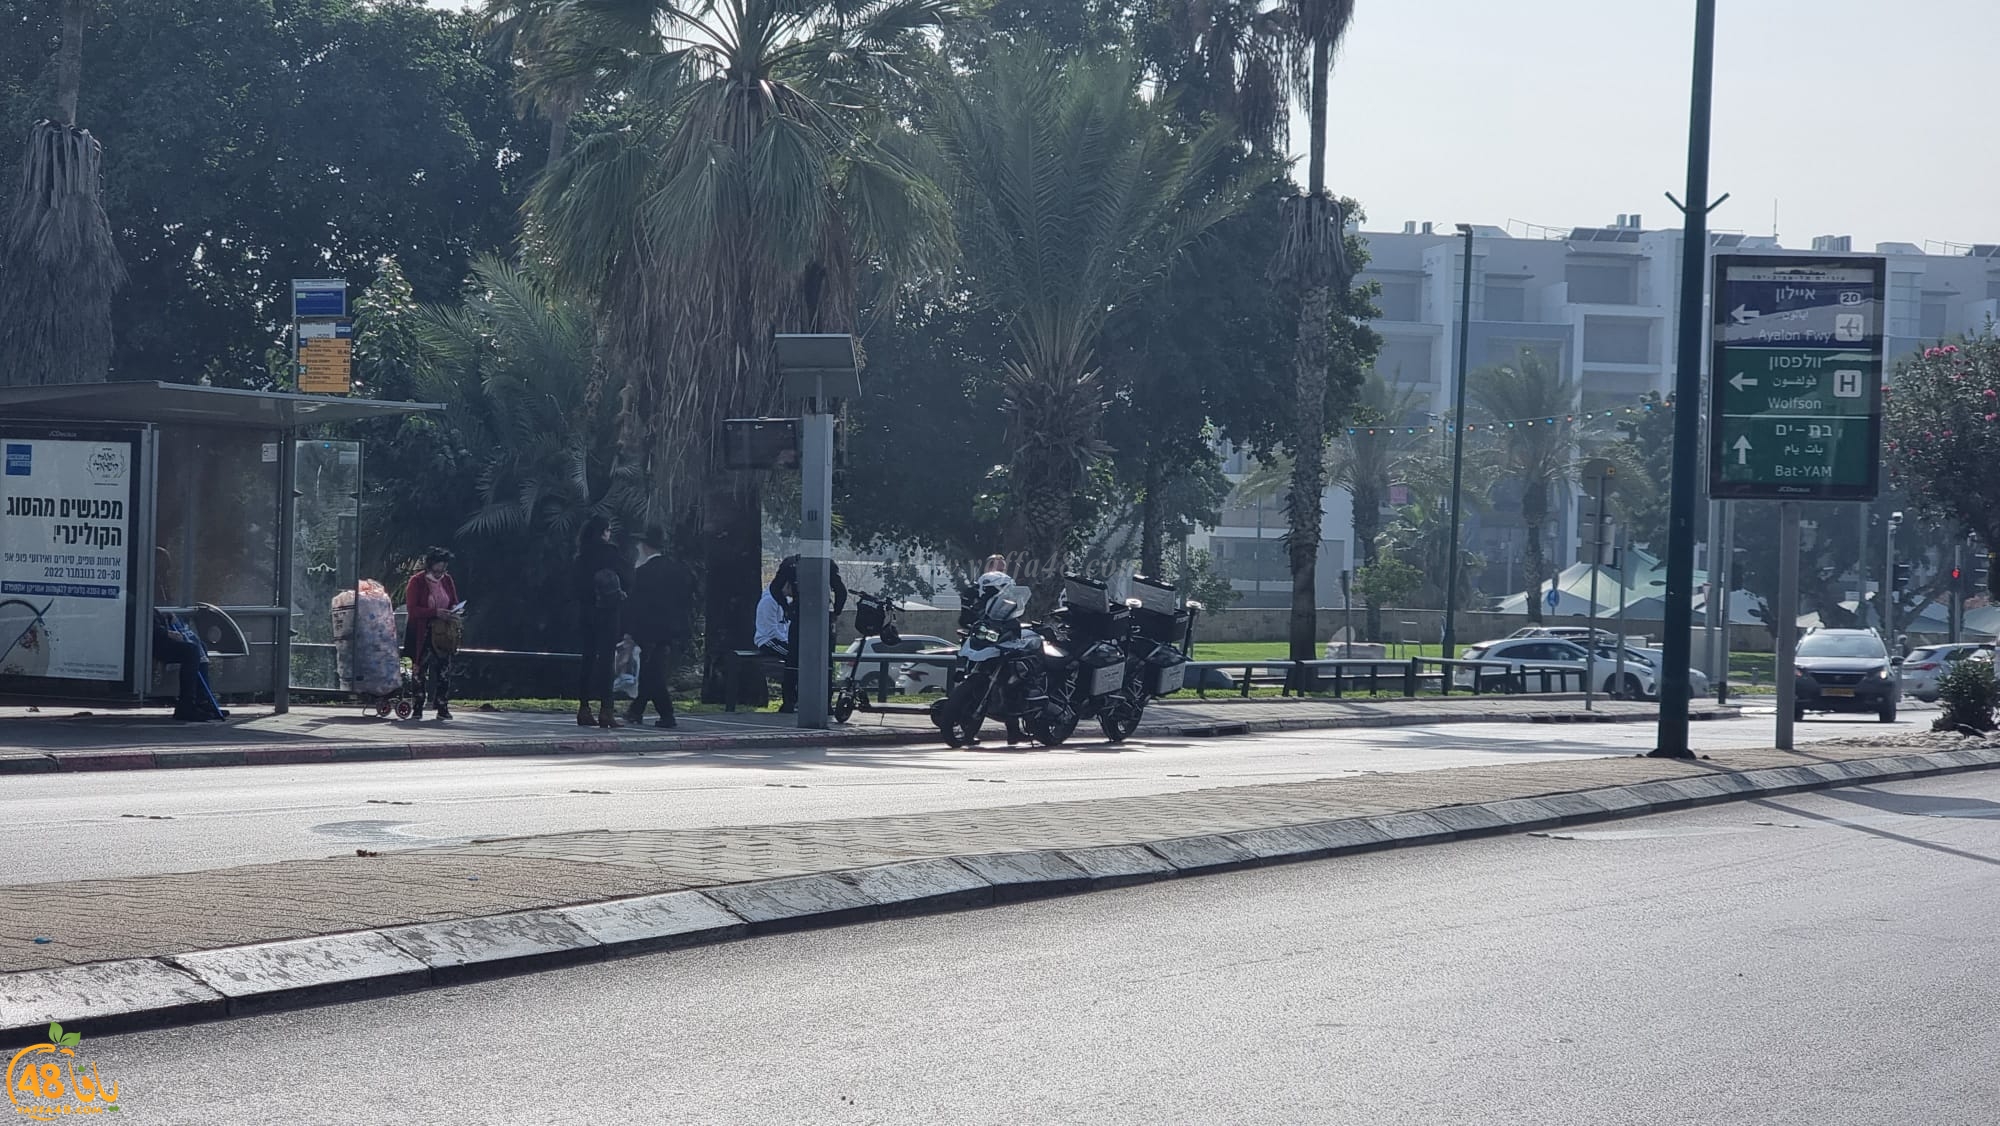   يافا: حملة واسعة لشرطة السير - اعتقال رجل وسيدة وتحرير مخالفات 